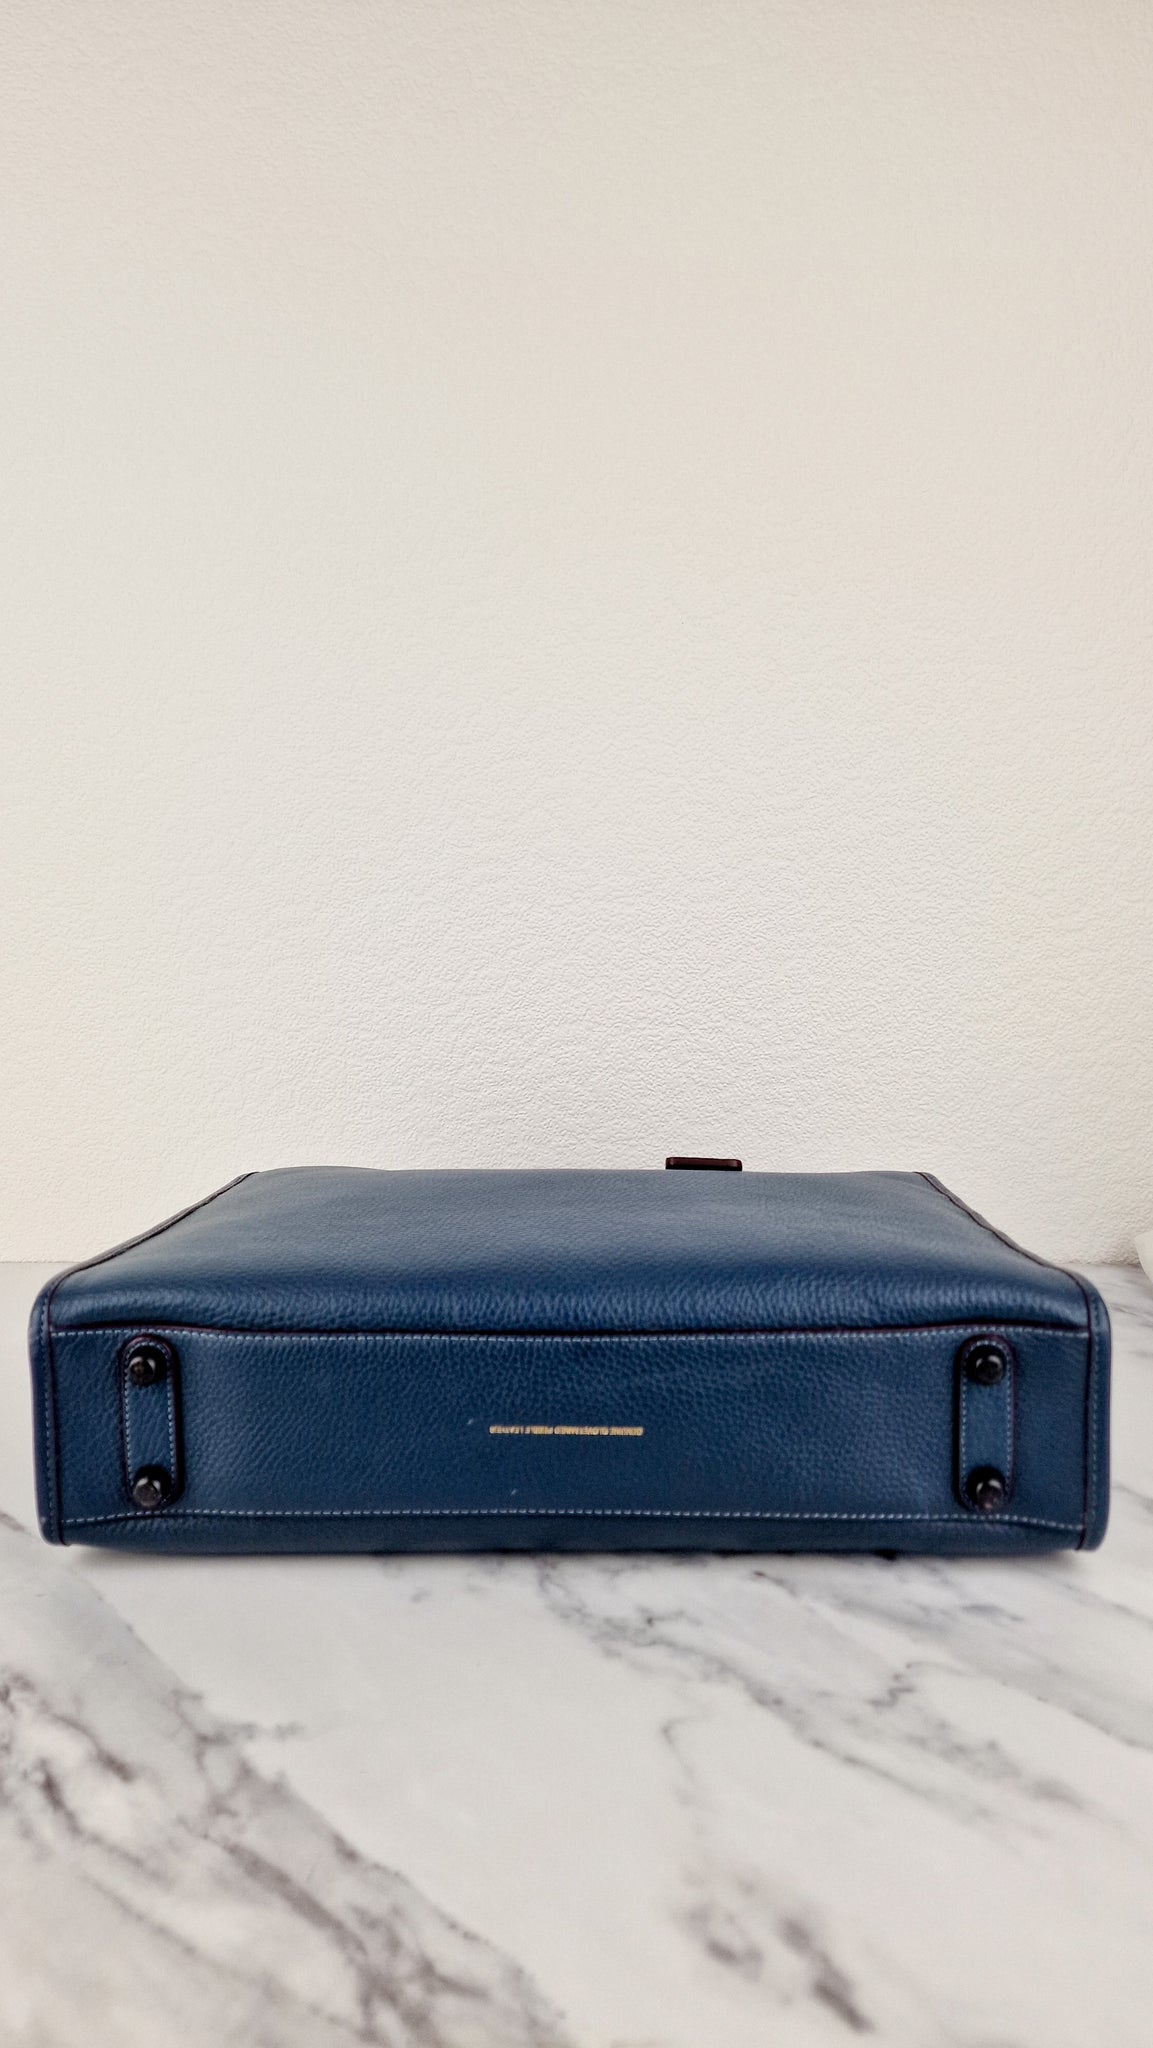 Coach 1941 Rogue Brief Briefcase in Dark Denim Blue Navy Leather